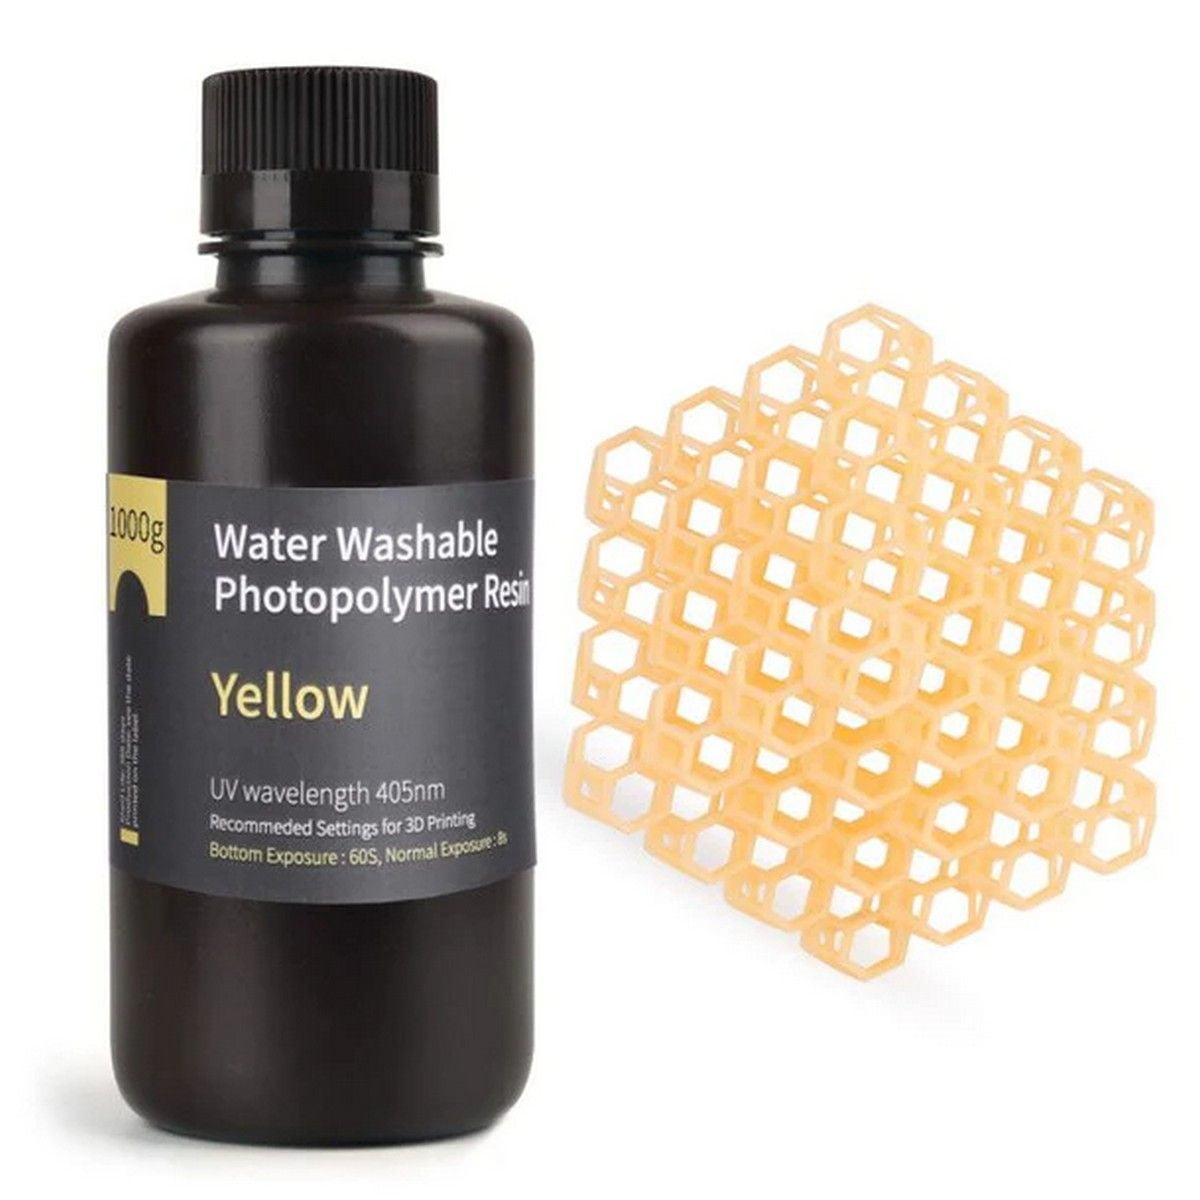 ELEGOO Water Washable Resin 1000g - Yellow